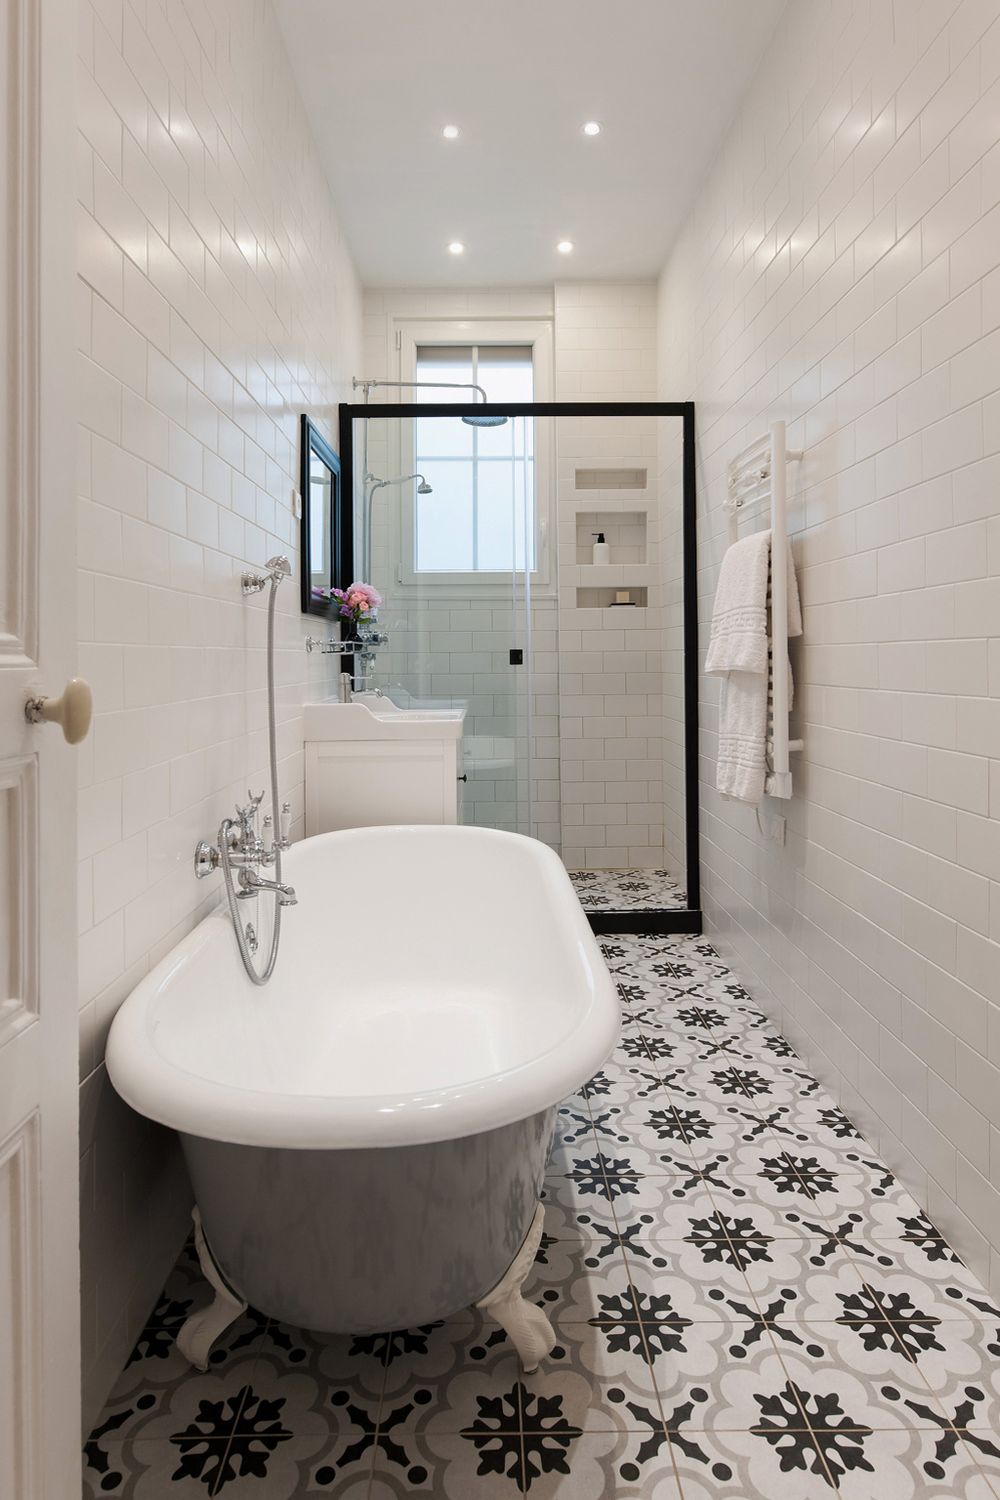 Parisian Bathroom decor with Clawfoot Tub and Towel warming rack on wall via havenin